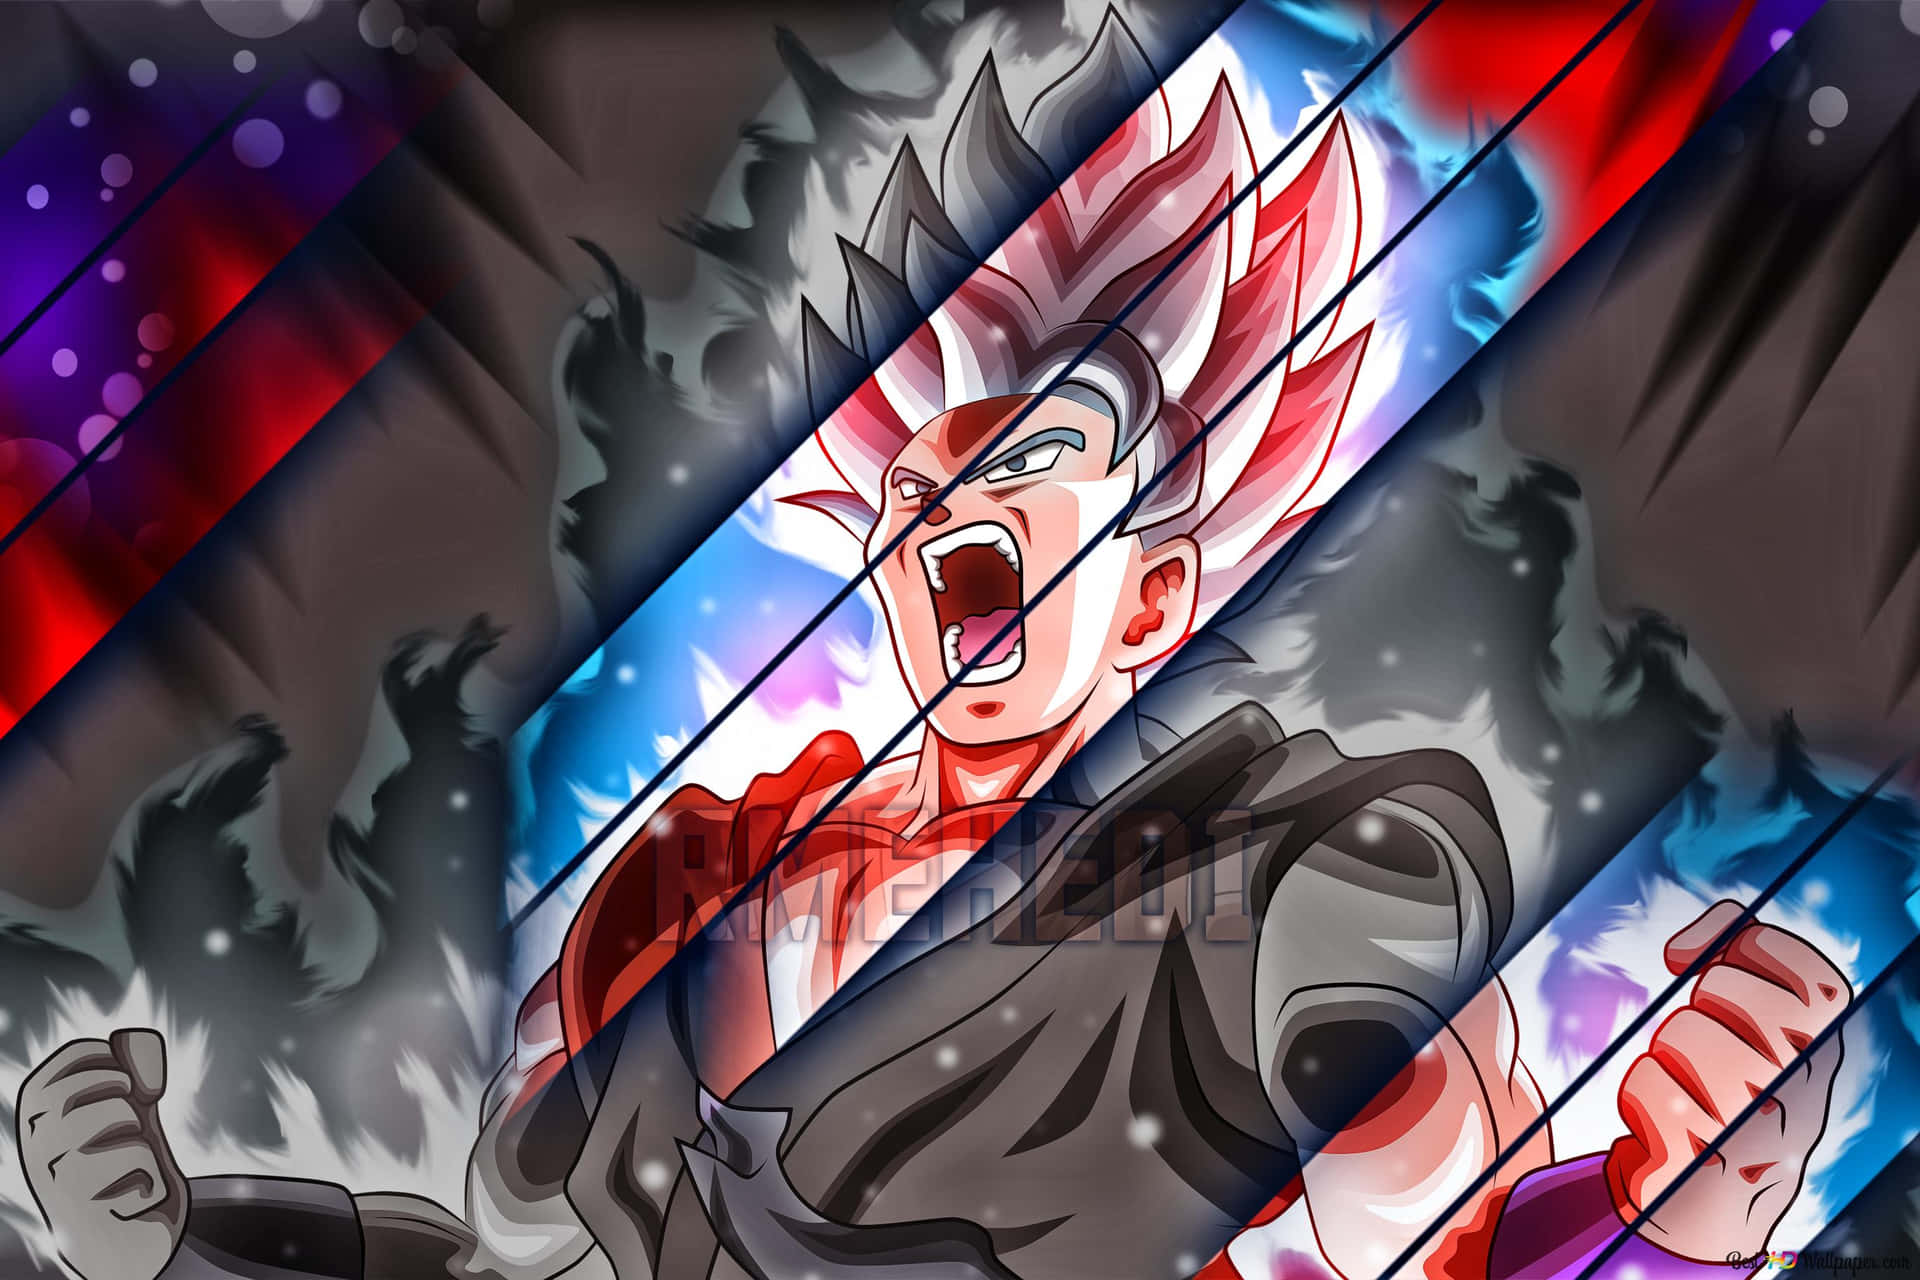 Goku når nye højder i Ultra Instinkt Form Wallpaper